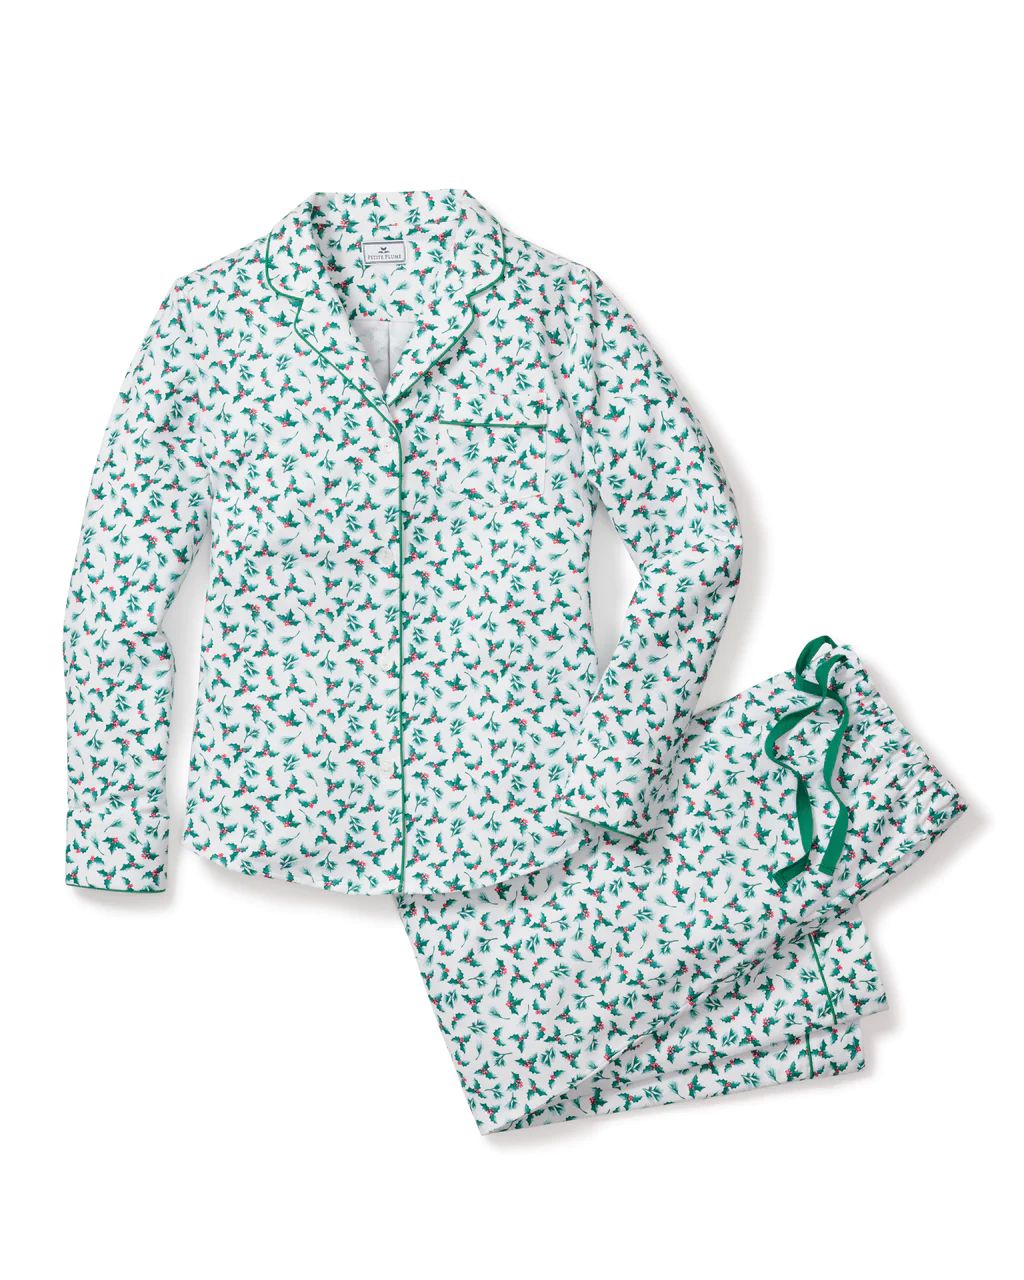 Women's Sprigs of the Season Pajama Set | Petite Plume